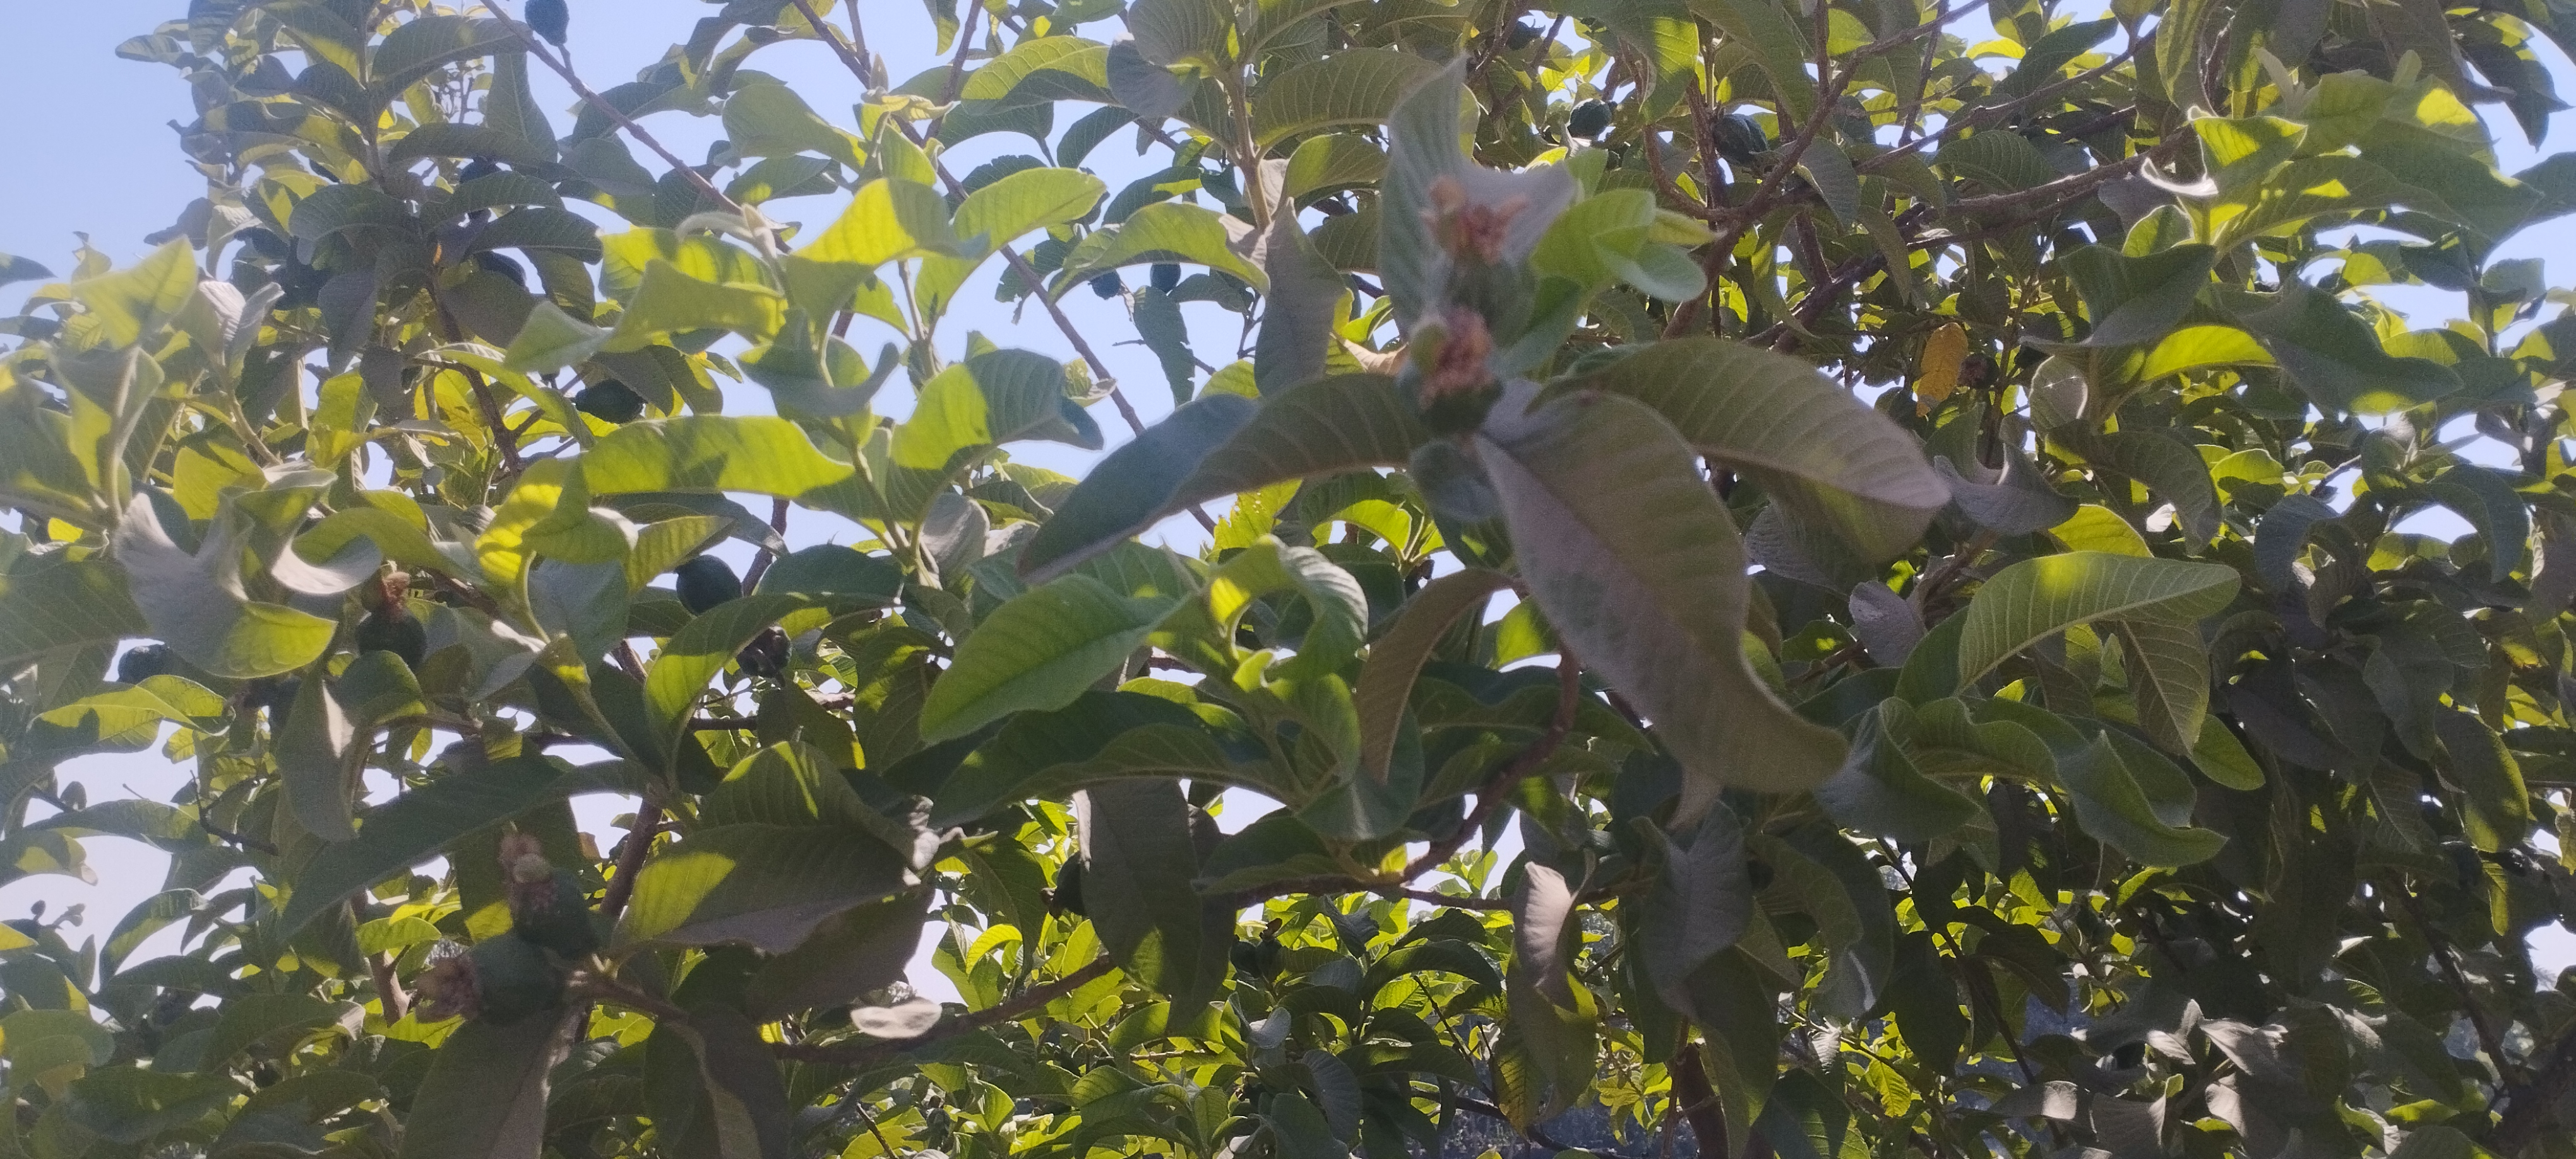 أشجار الجوافة تزين مزارع المنيا (4)